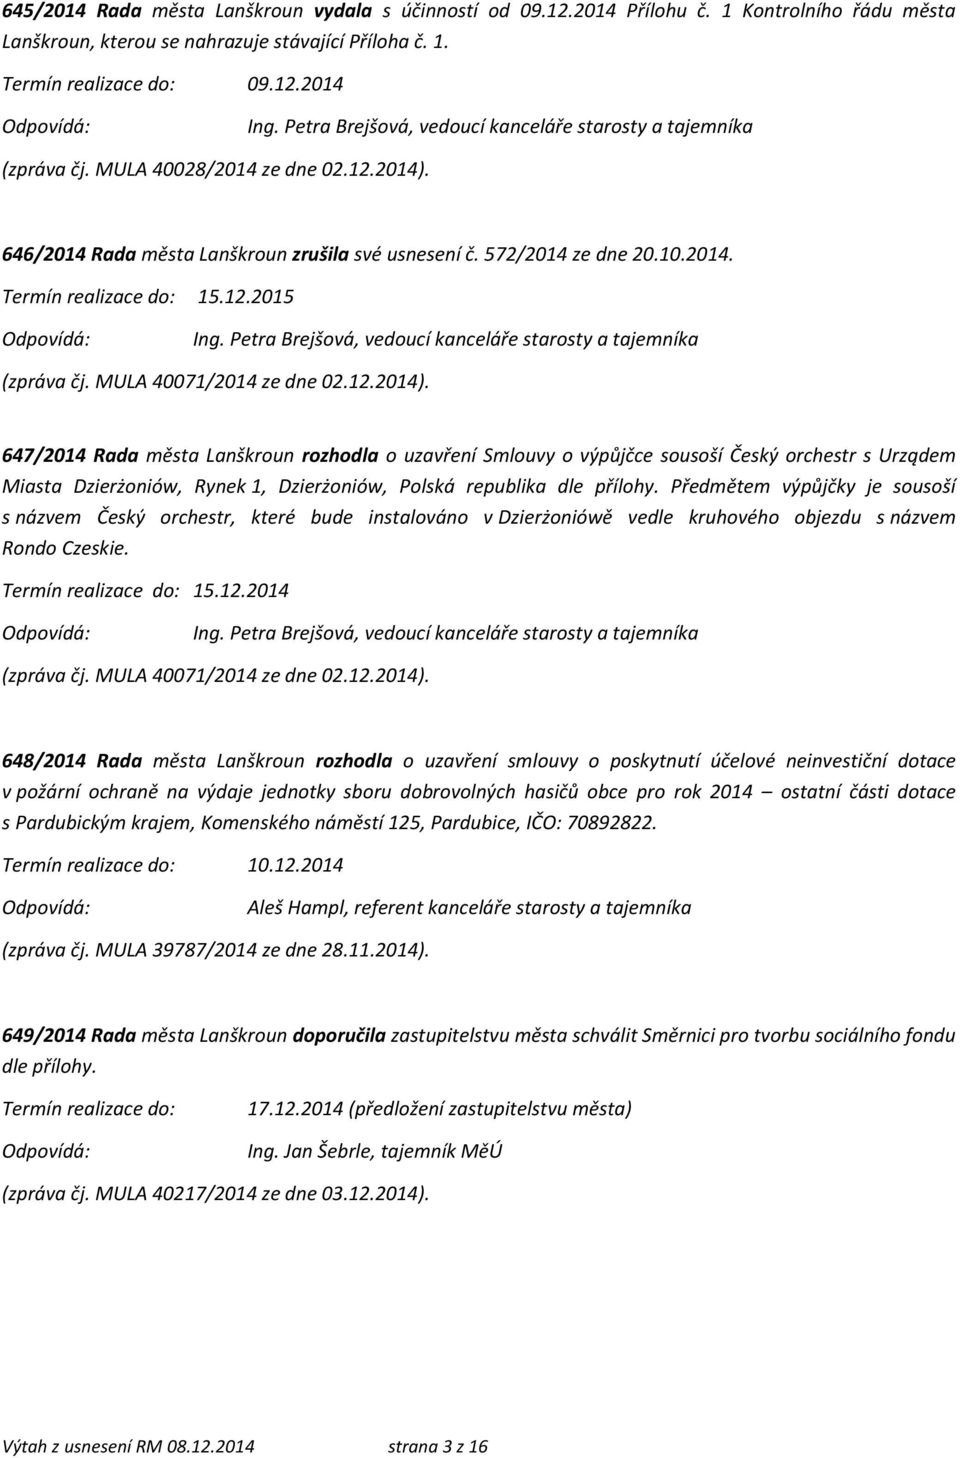 646/2014 Rada města Lanškroun zrušila své usnesení č. 572/2014 ze dne 20.10.2014. Termín realizace do: 15.12.2015 (zpráva čj. MULA 40071/2014 ze dne 02.12.2014).